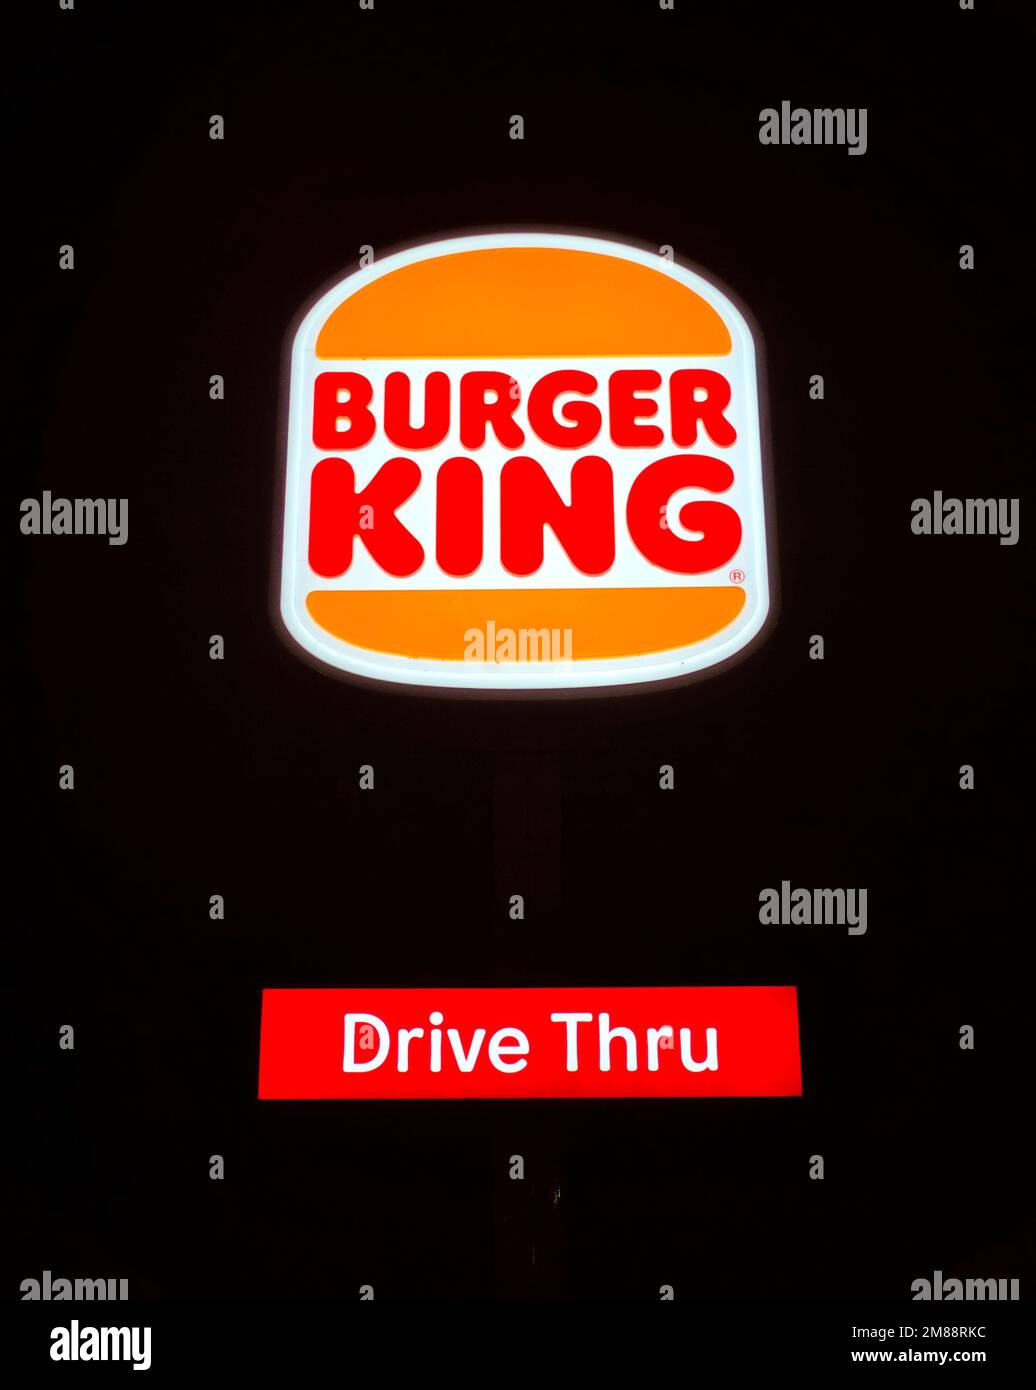 le logo et l'affiche du restaurant burger king drive at night Banque D'Images